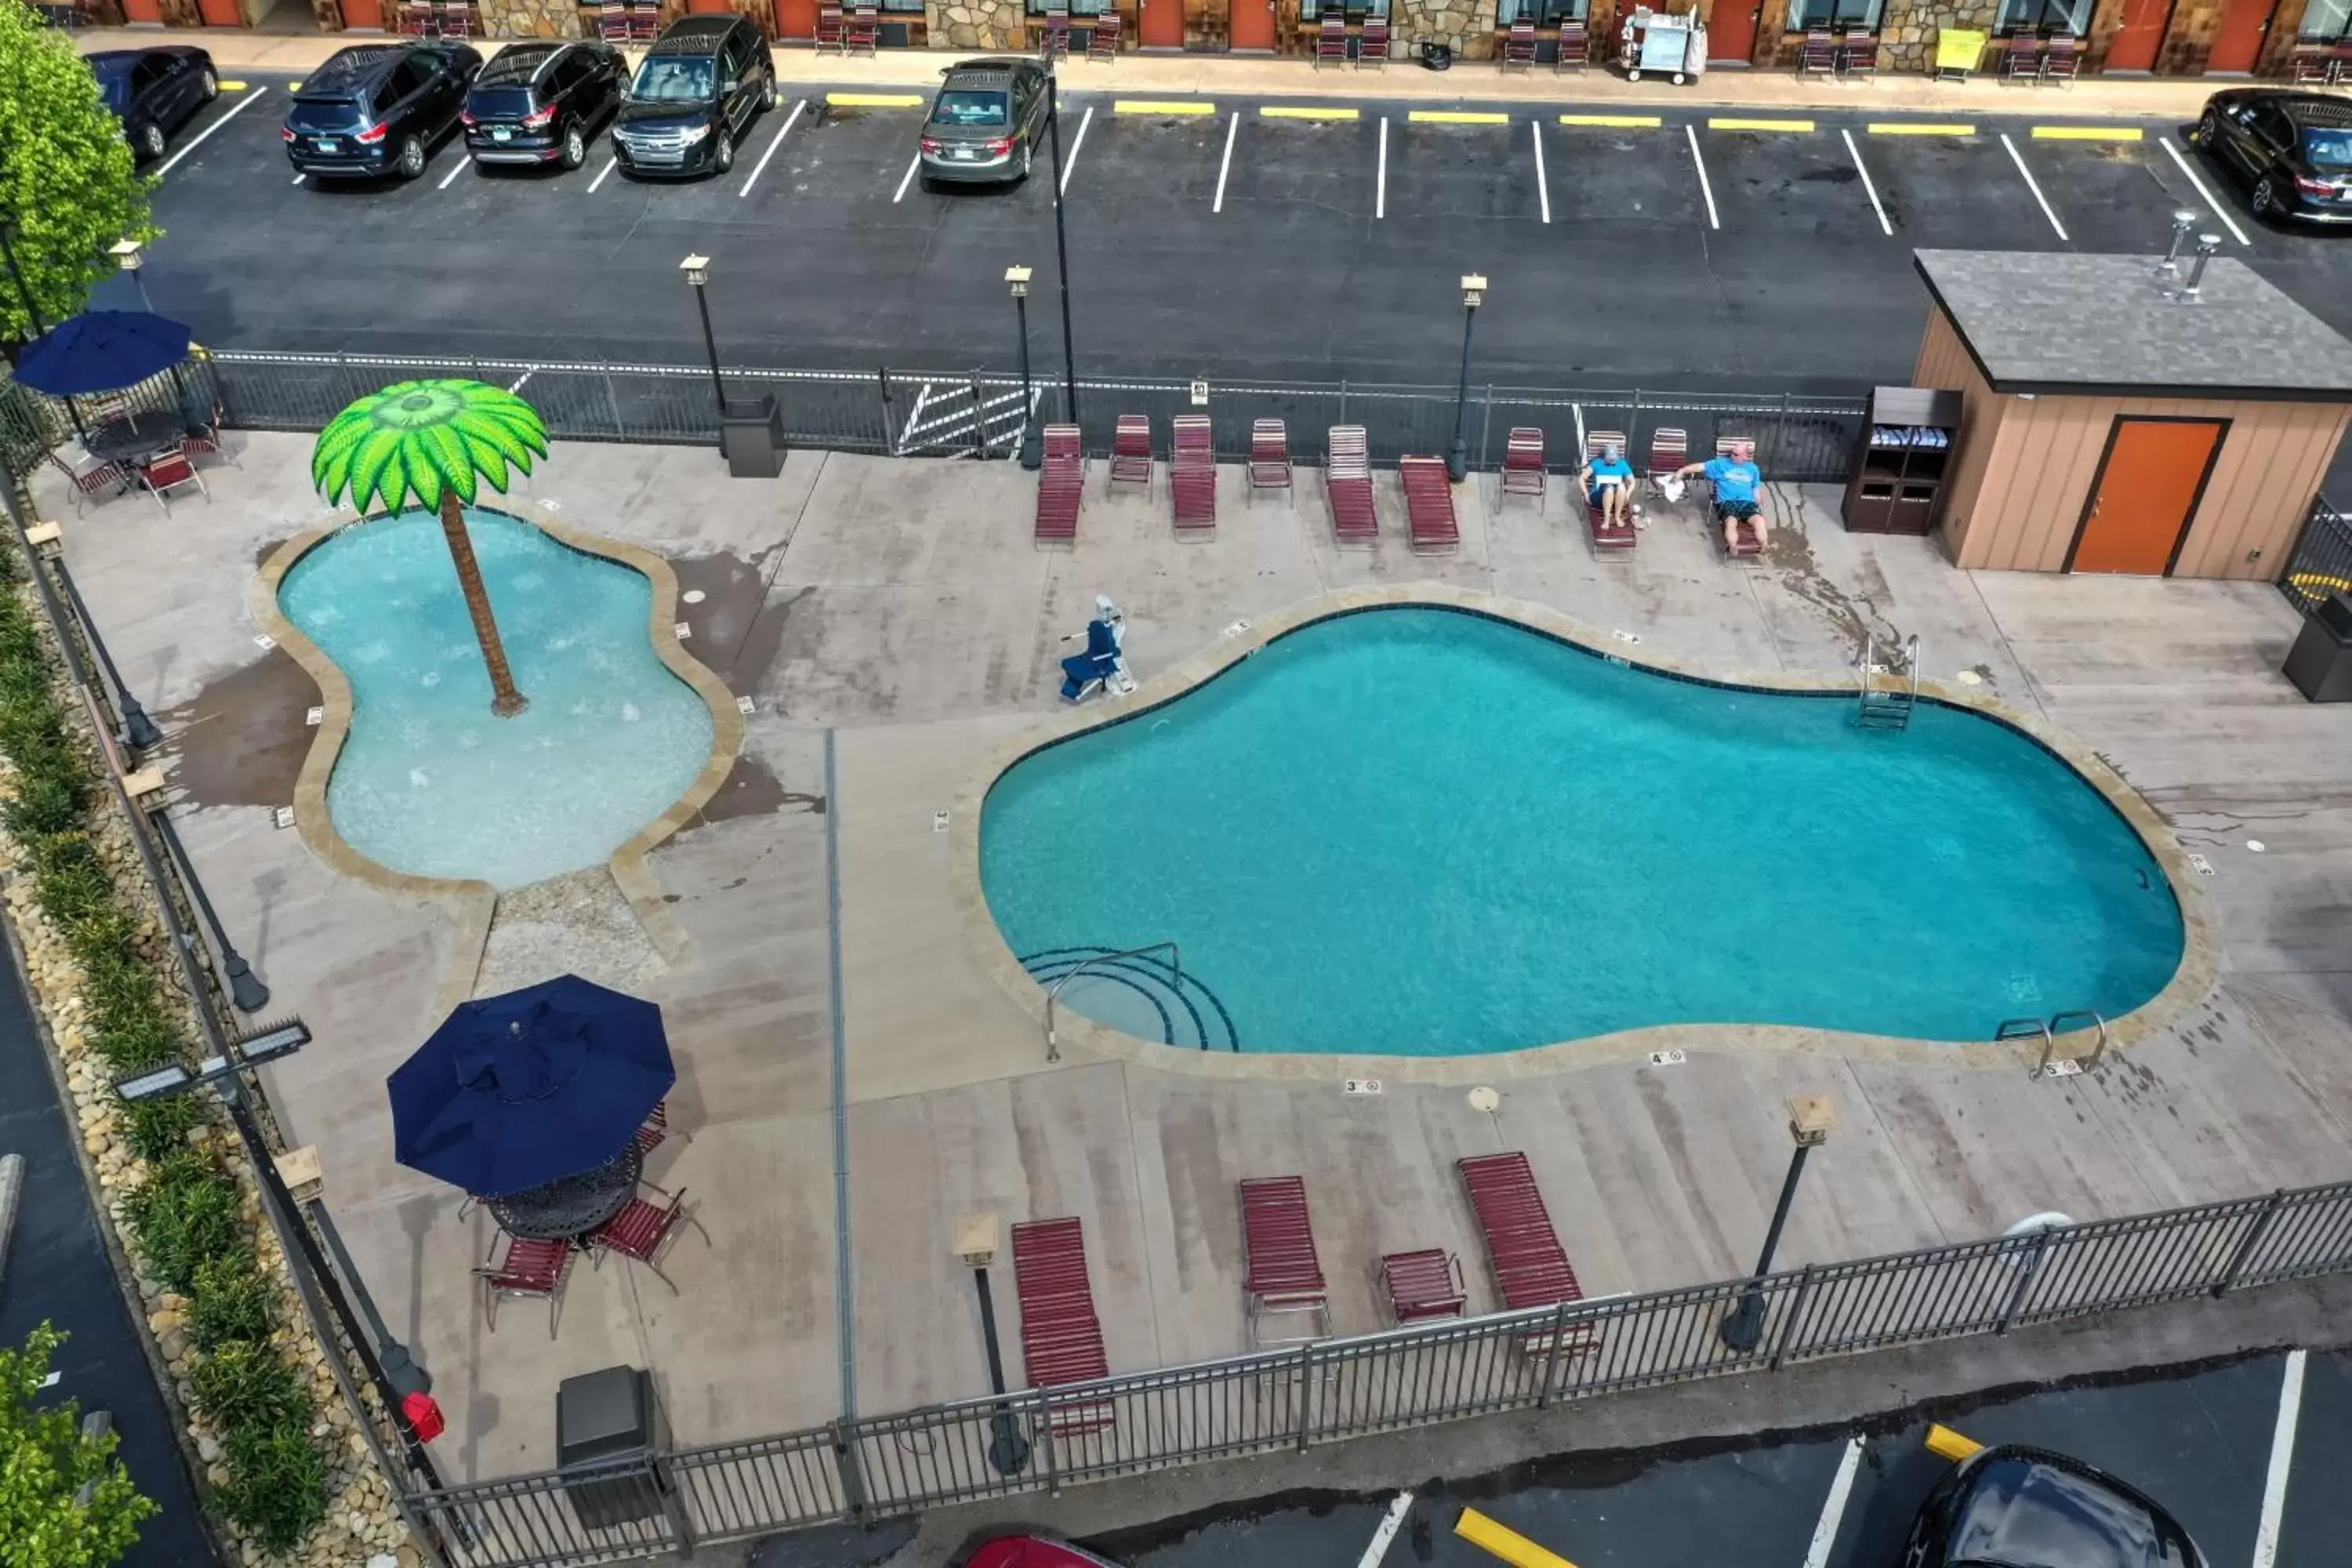 Pool View in Crossroads Inn & Suites